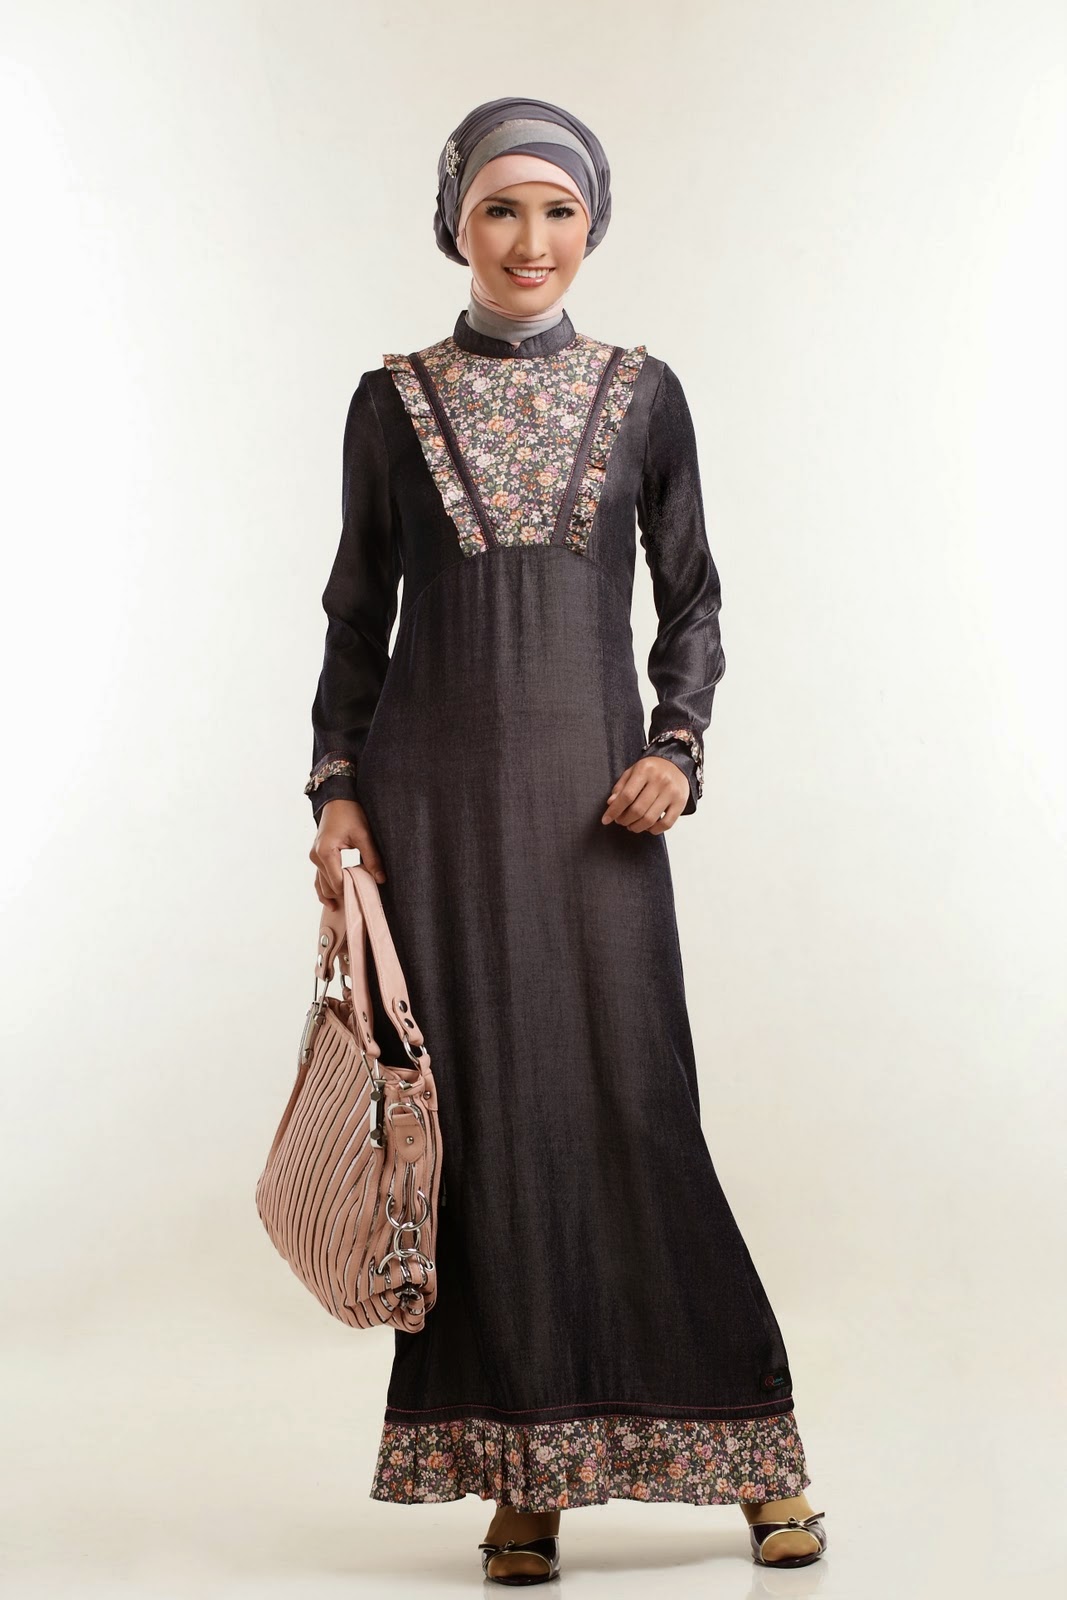 Model Hijab Yang Sedang Tren Saat Lebaran 2014 Kumpulan Berita